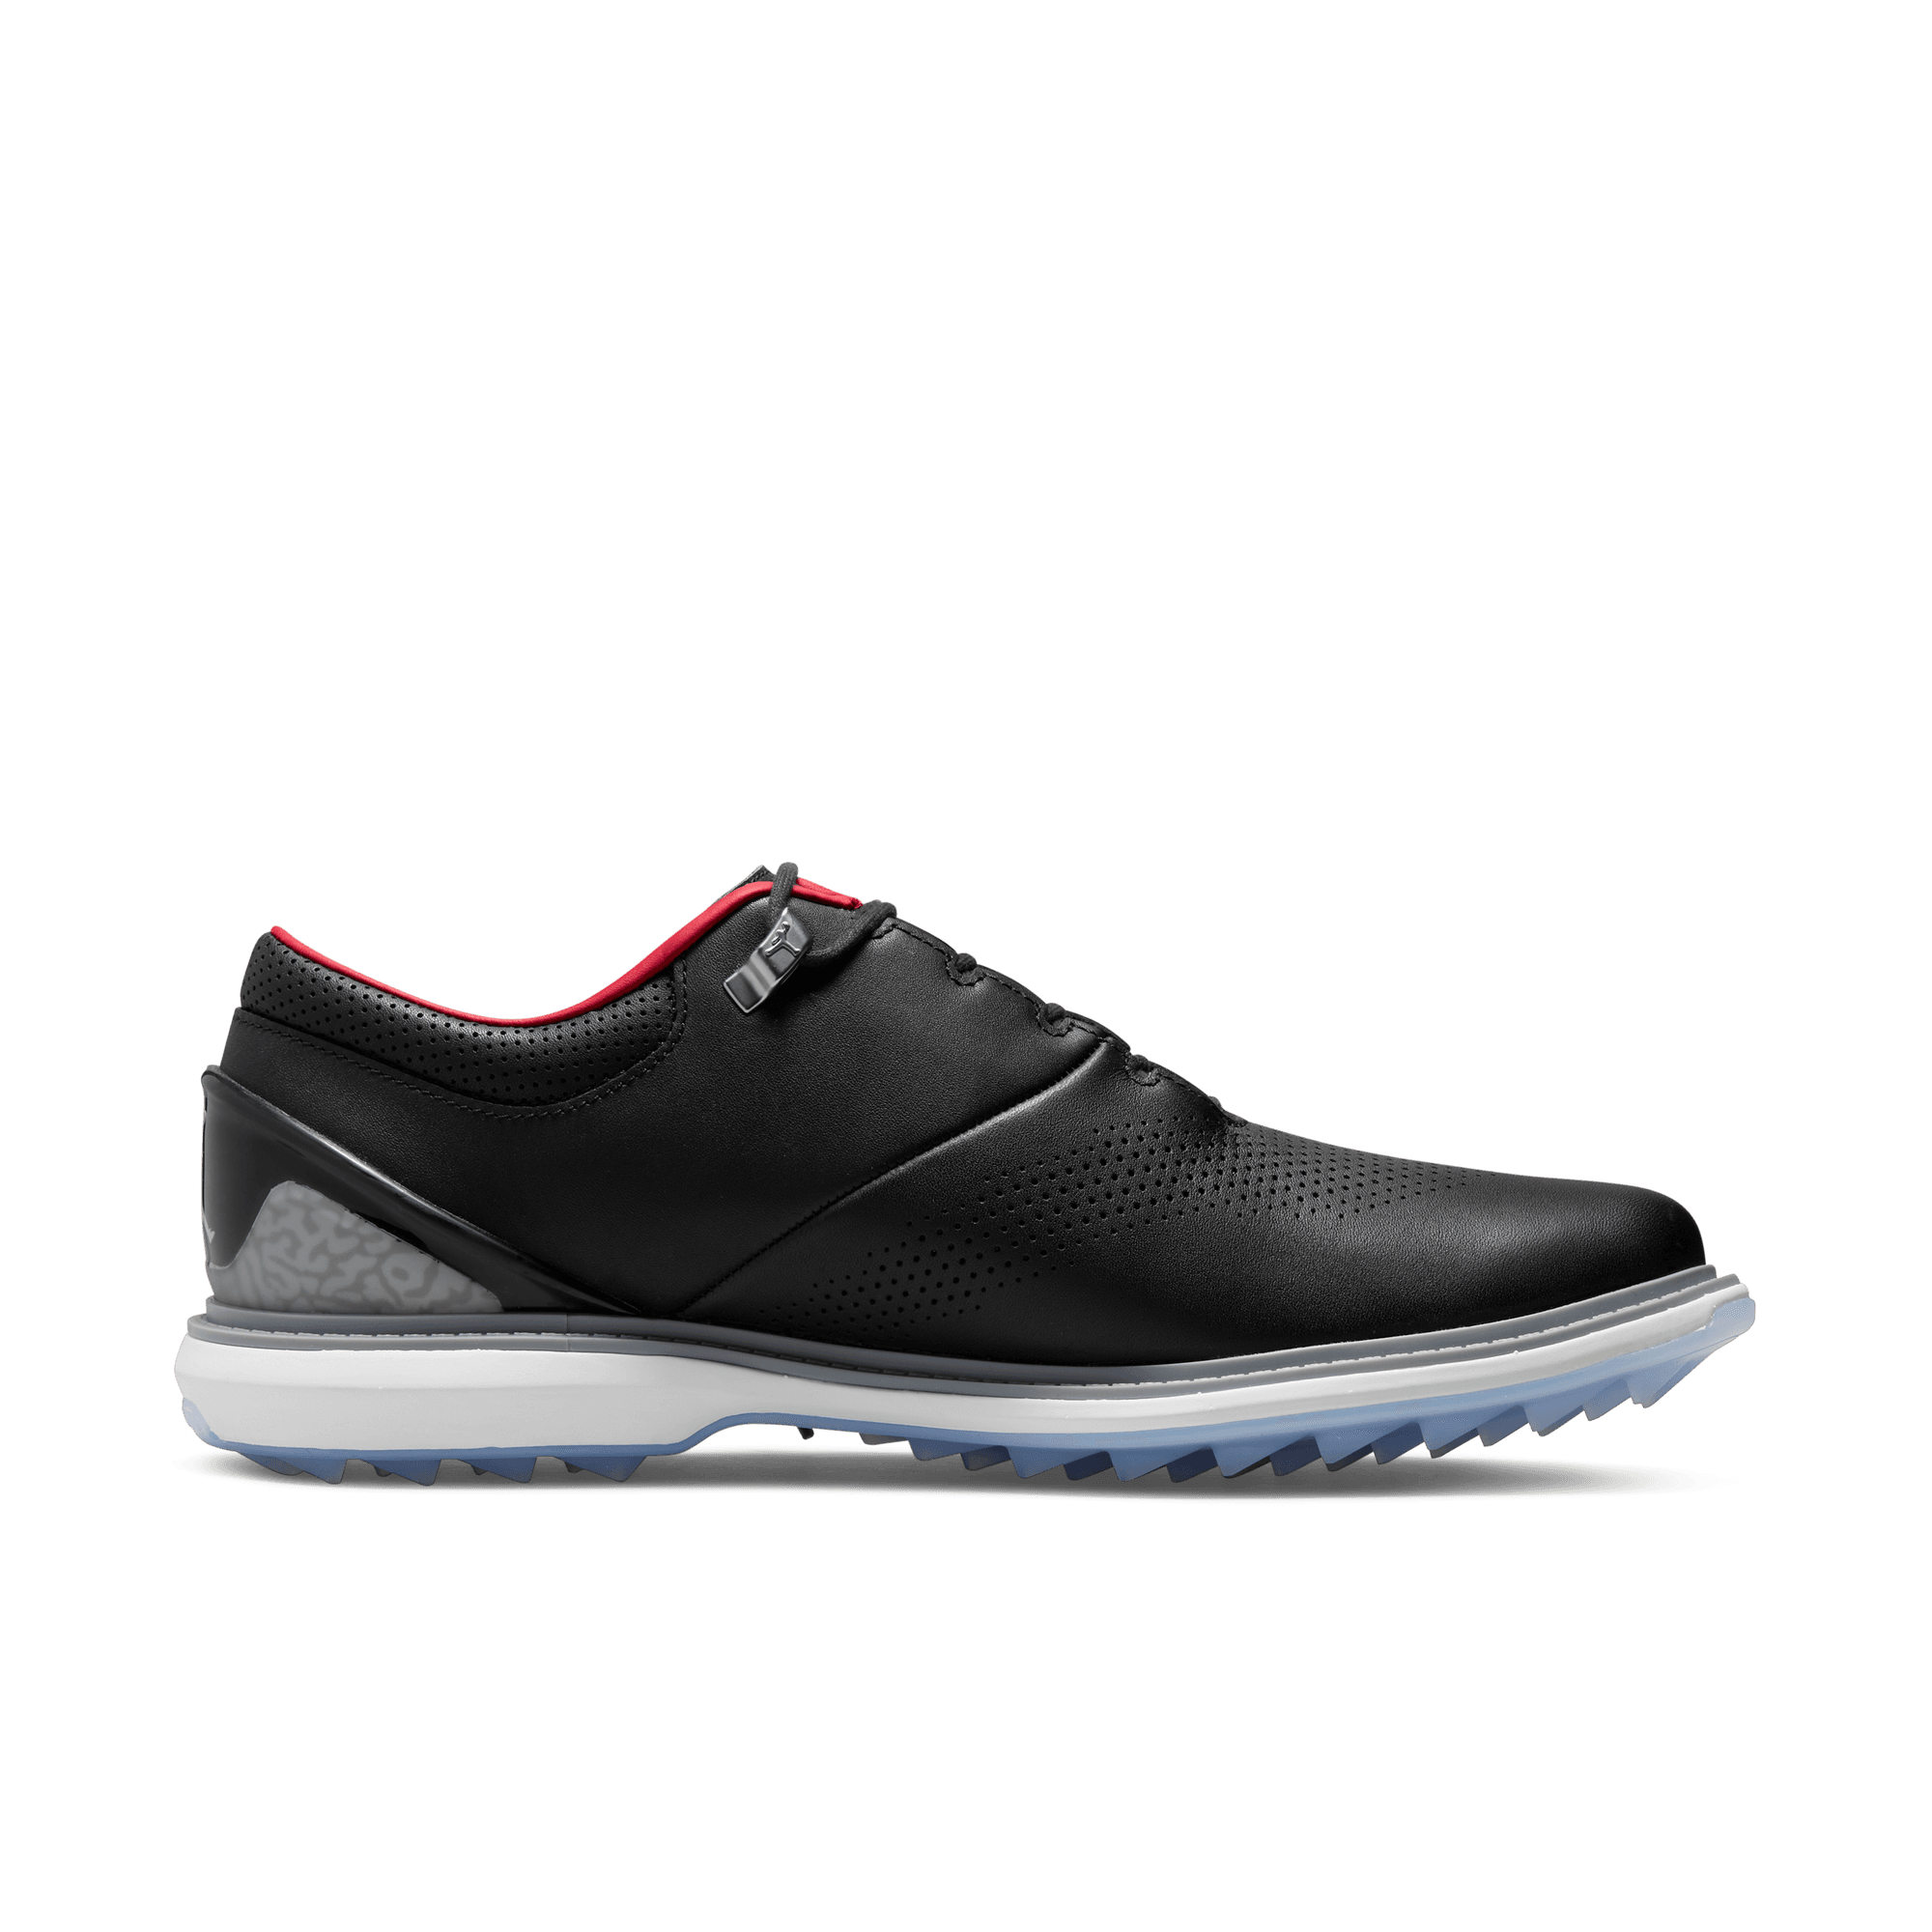 Jordan ADG 4 Spikeless Golf Shoe 